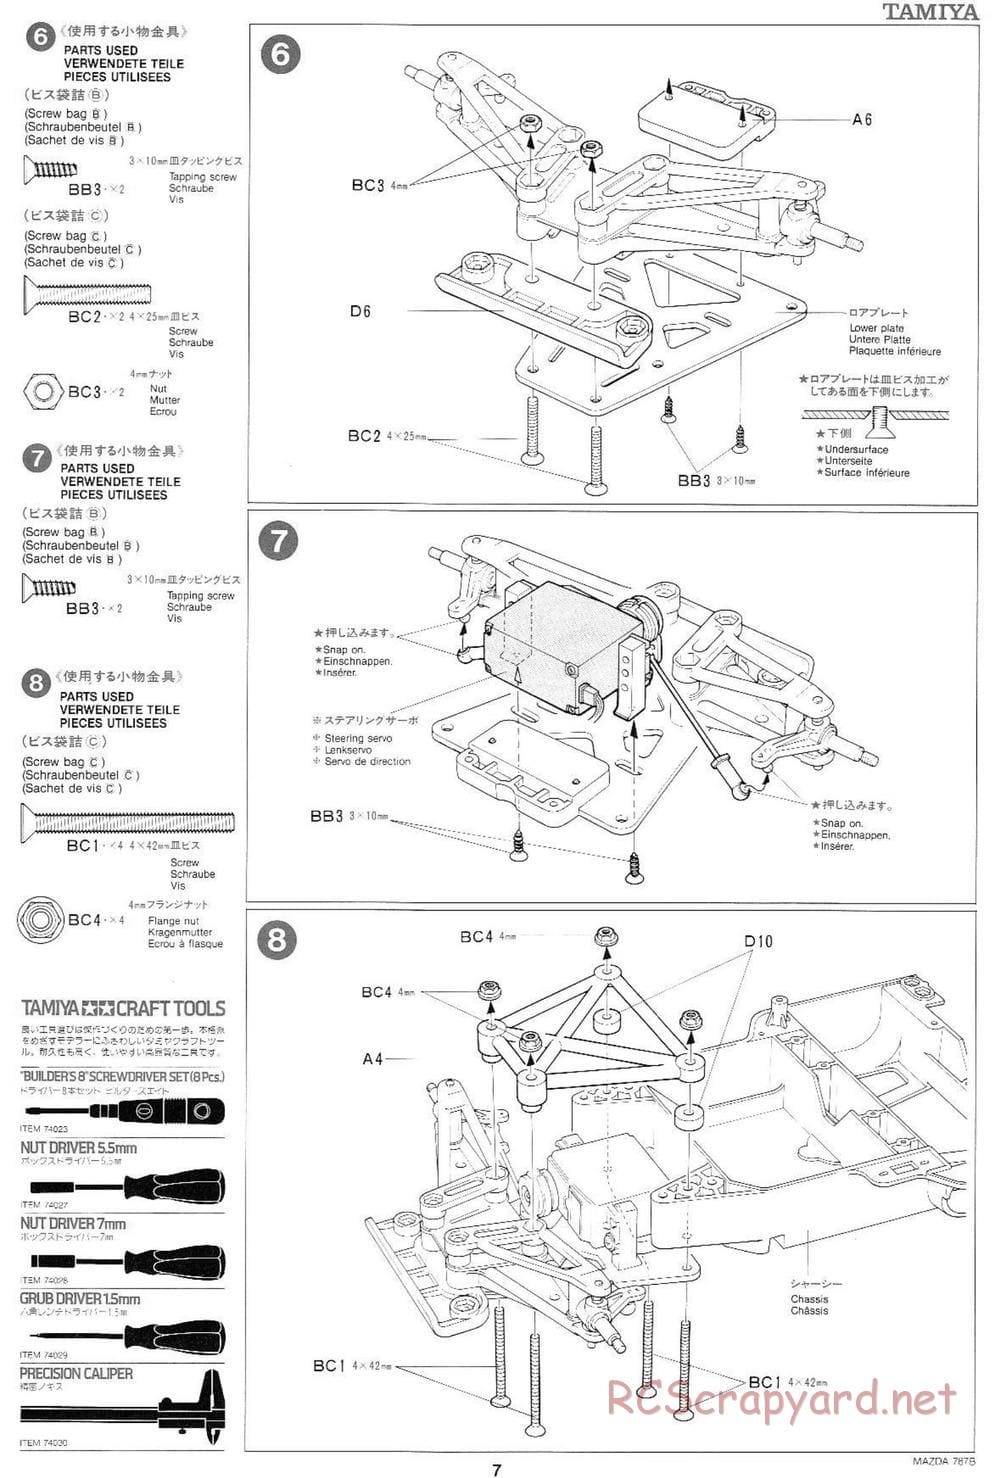 Tamiya - Mazda 787B - Group-C Chassis - Manual - Page 7